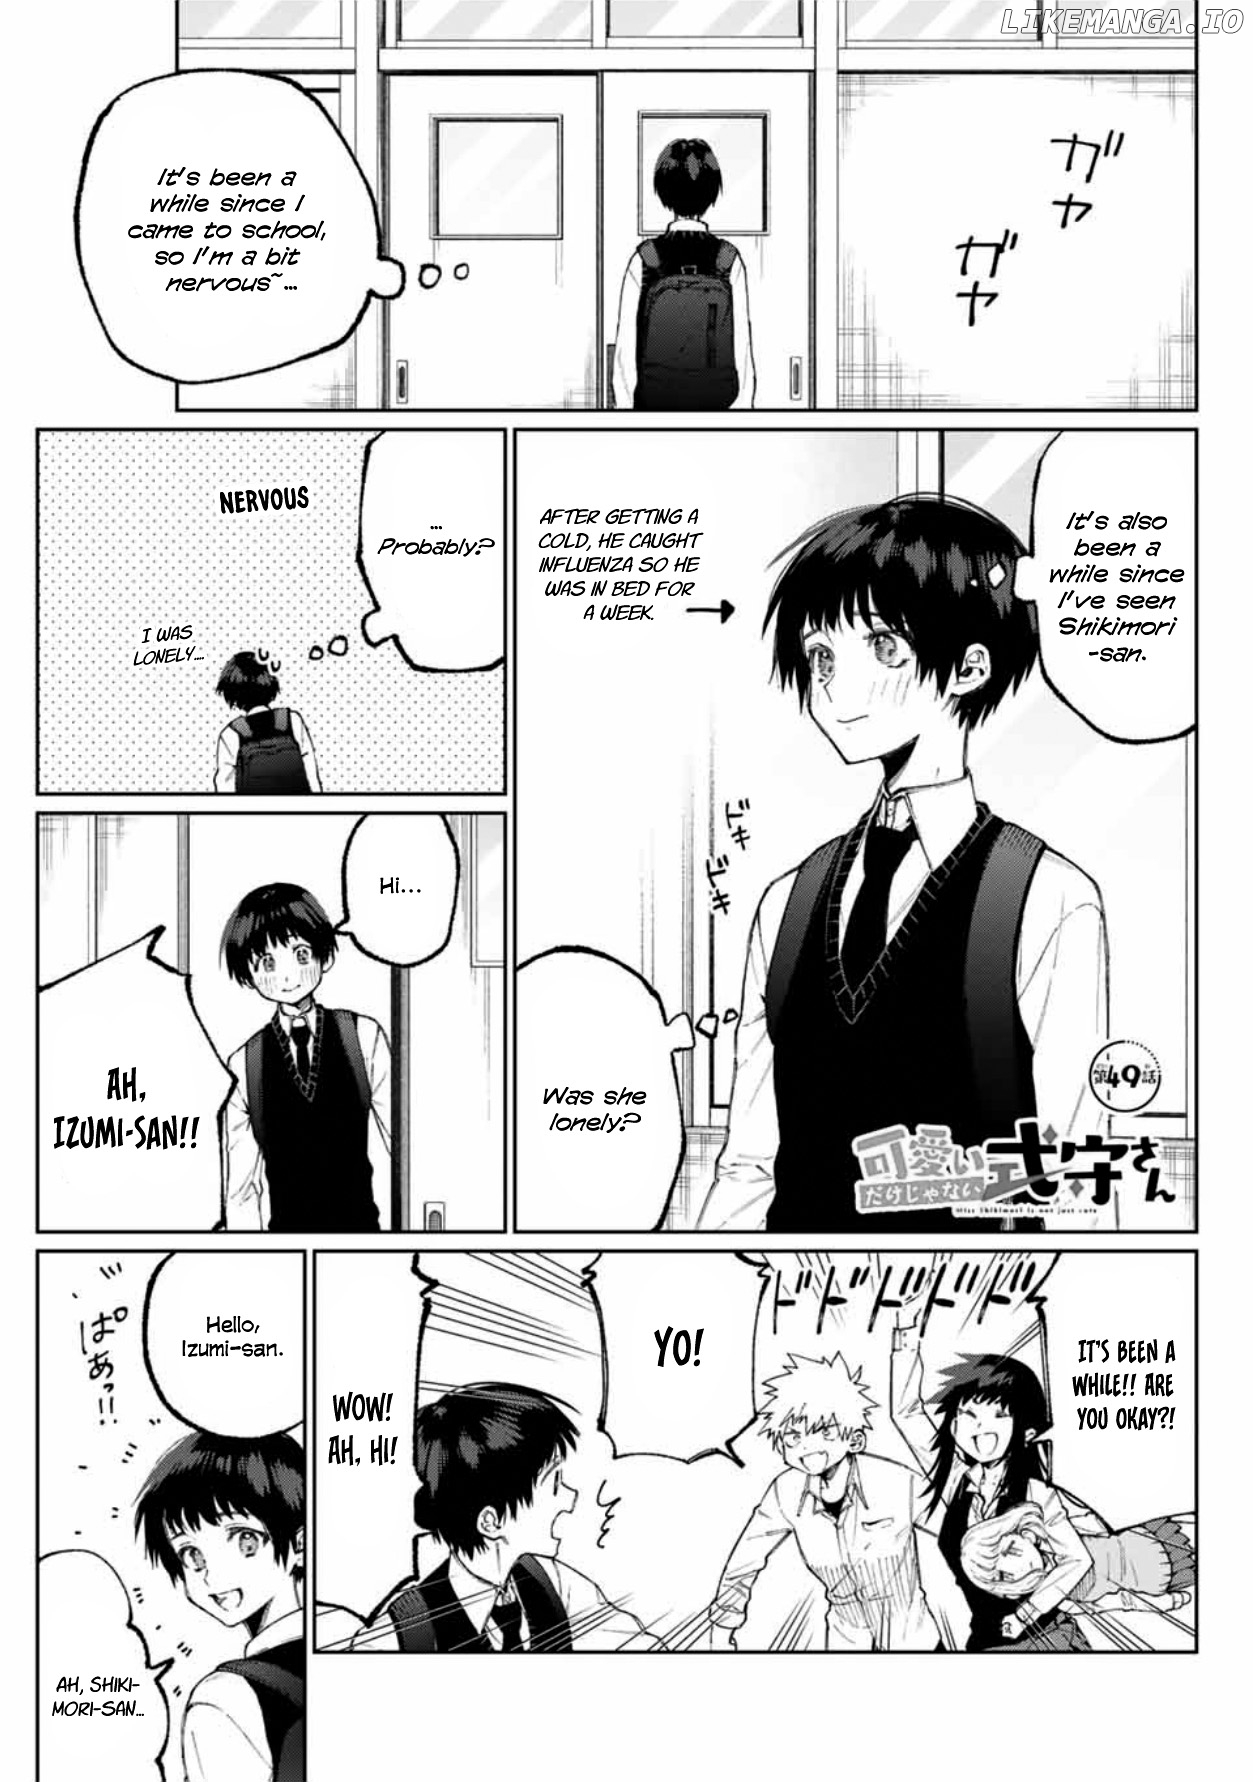 Shikimori's Not Just A Cutie chapter 49 - page 1